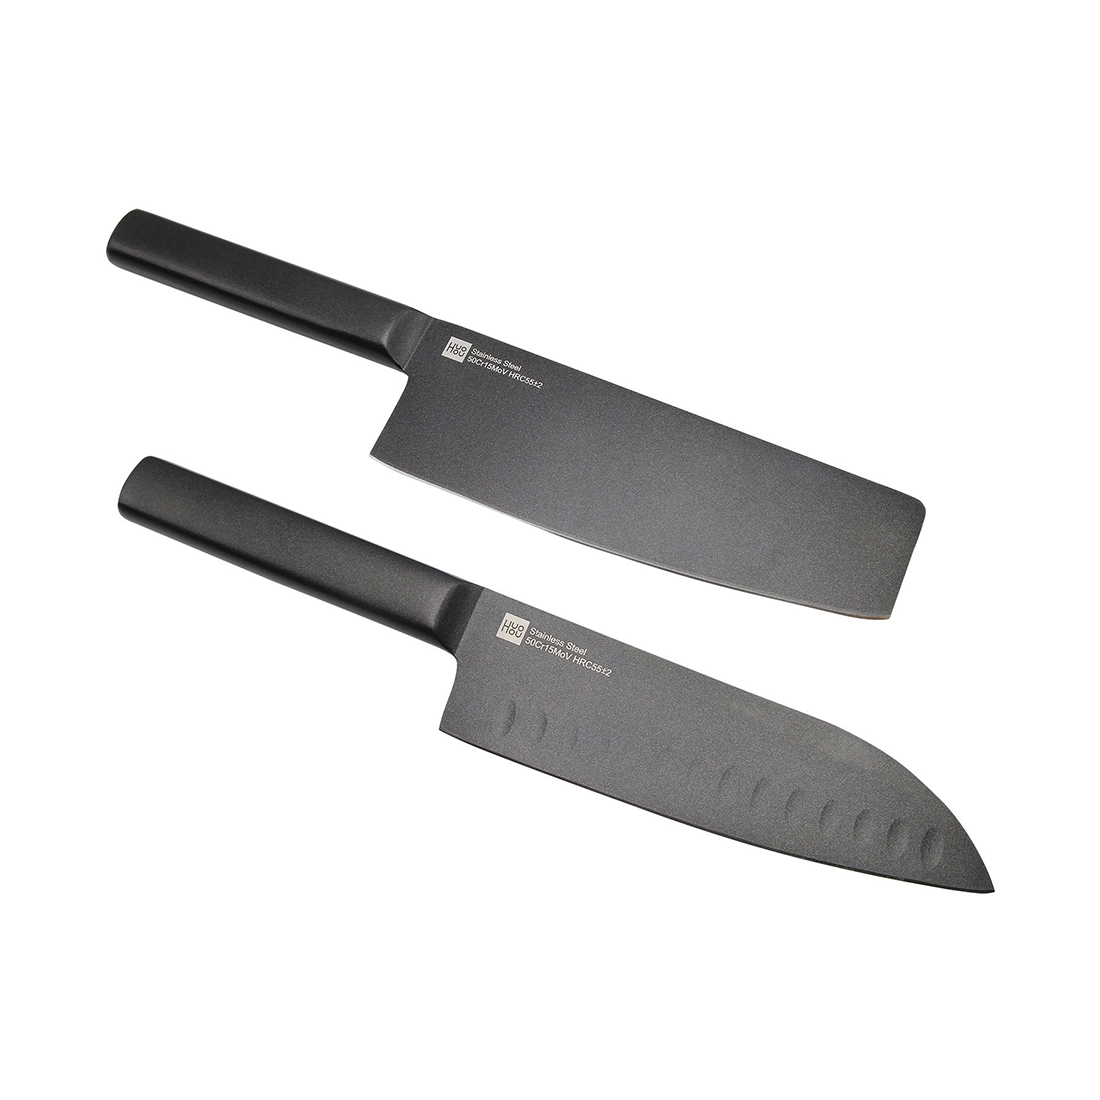 Набор ножей, HuoHou Cool black non-stick steel knife set, HU0015, 2 предмета, Нержавеющая сталь, Бол